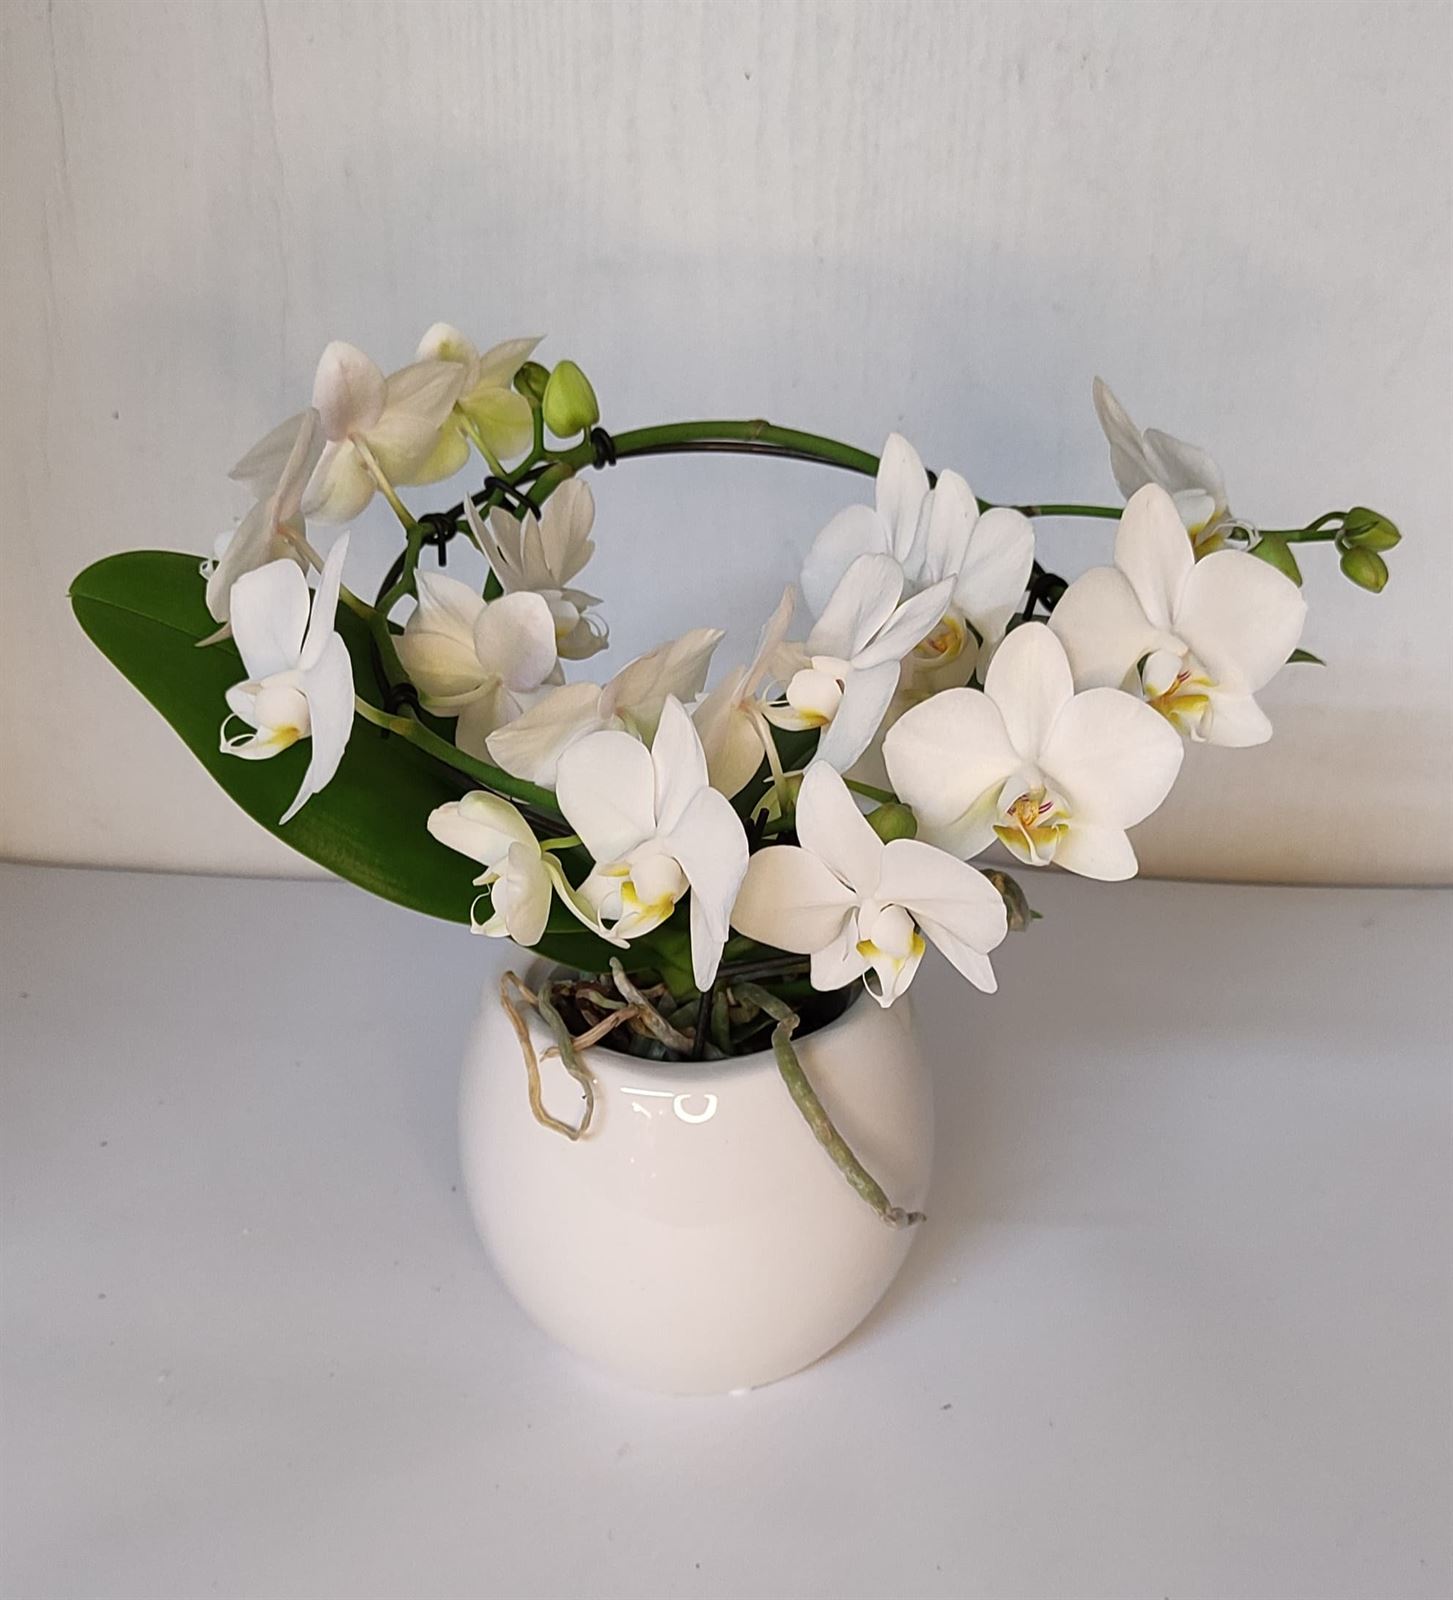 Orquídea coroa - Imagen 1